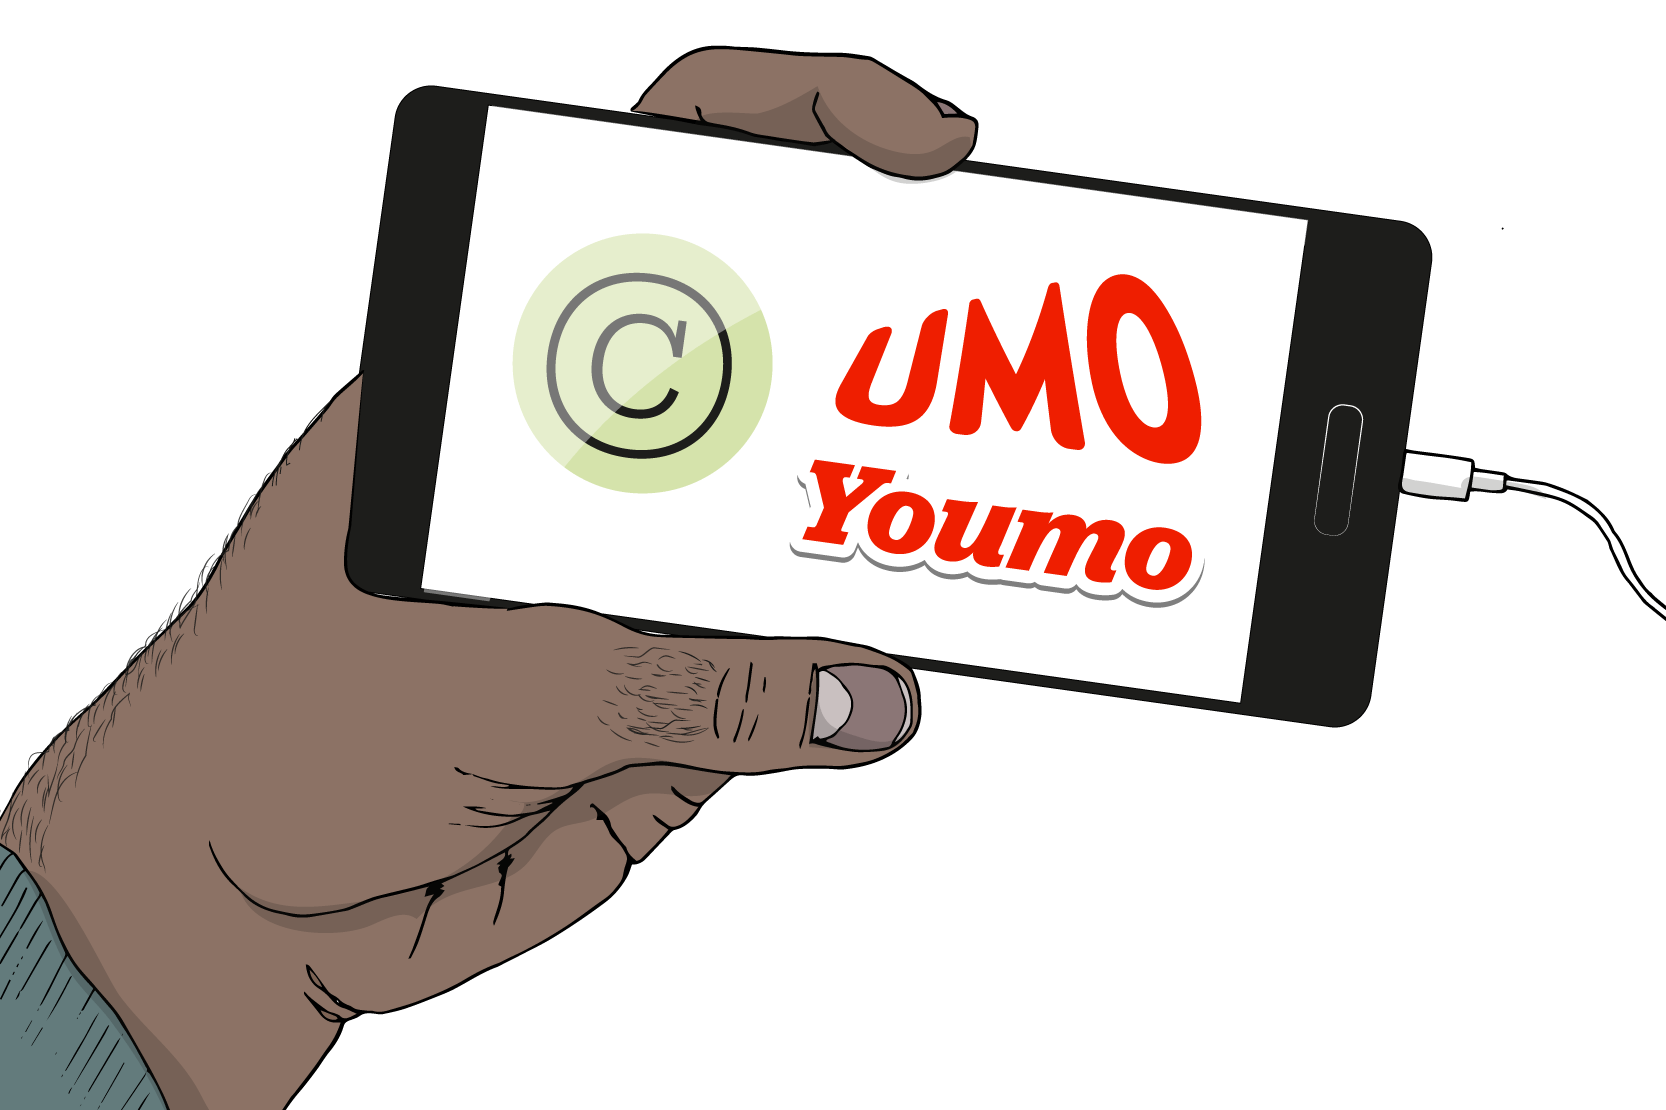 En hand som håller mobil. Mobilen visar UMO och Youmo på skärmen. Illustration